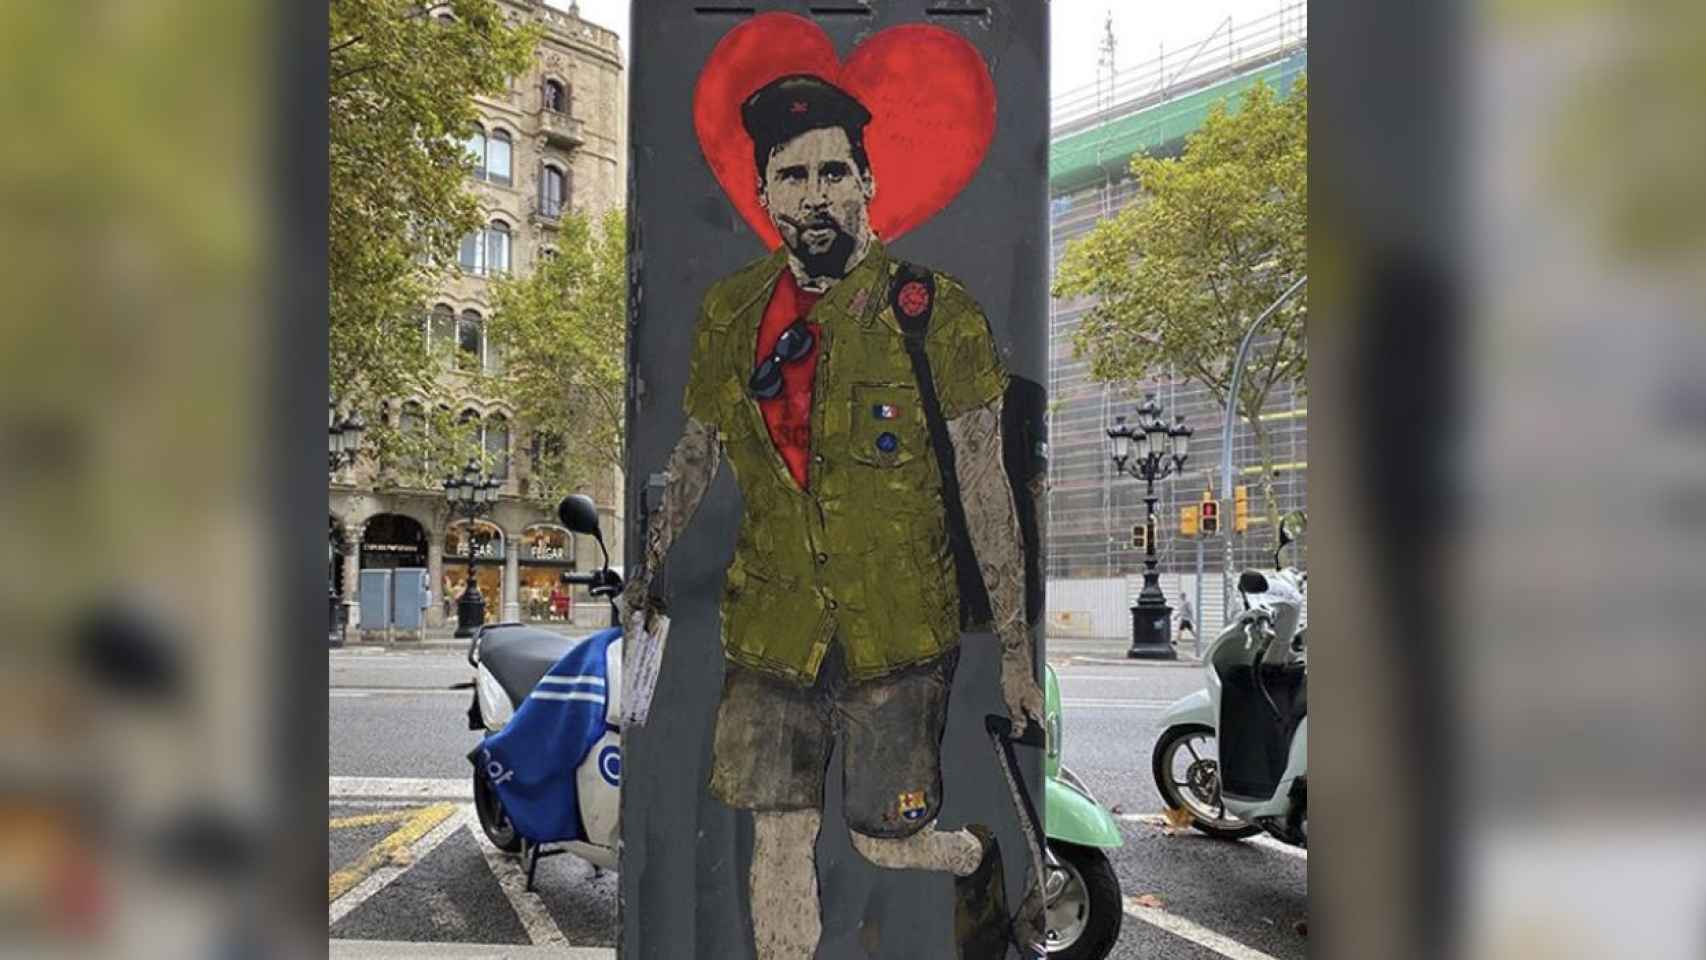 Grafiti Messi, a lo Che Gevara, en la plaza de Catalunya, pintado por Tvboy / INSTAGRAM